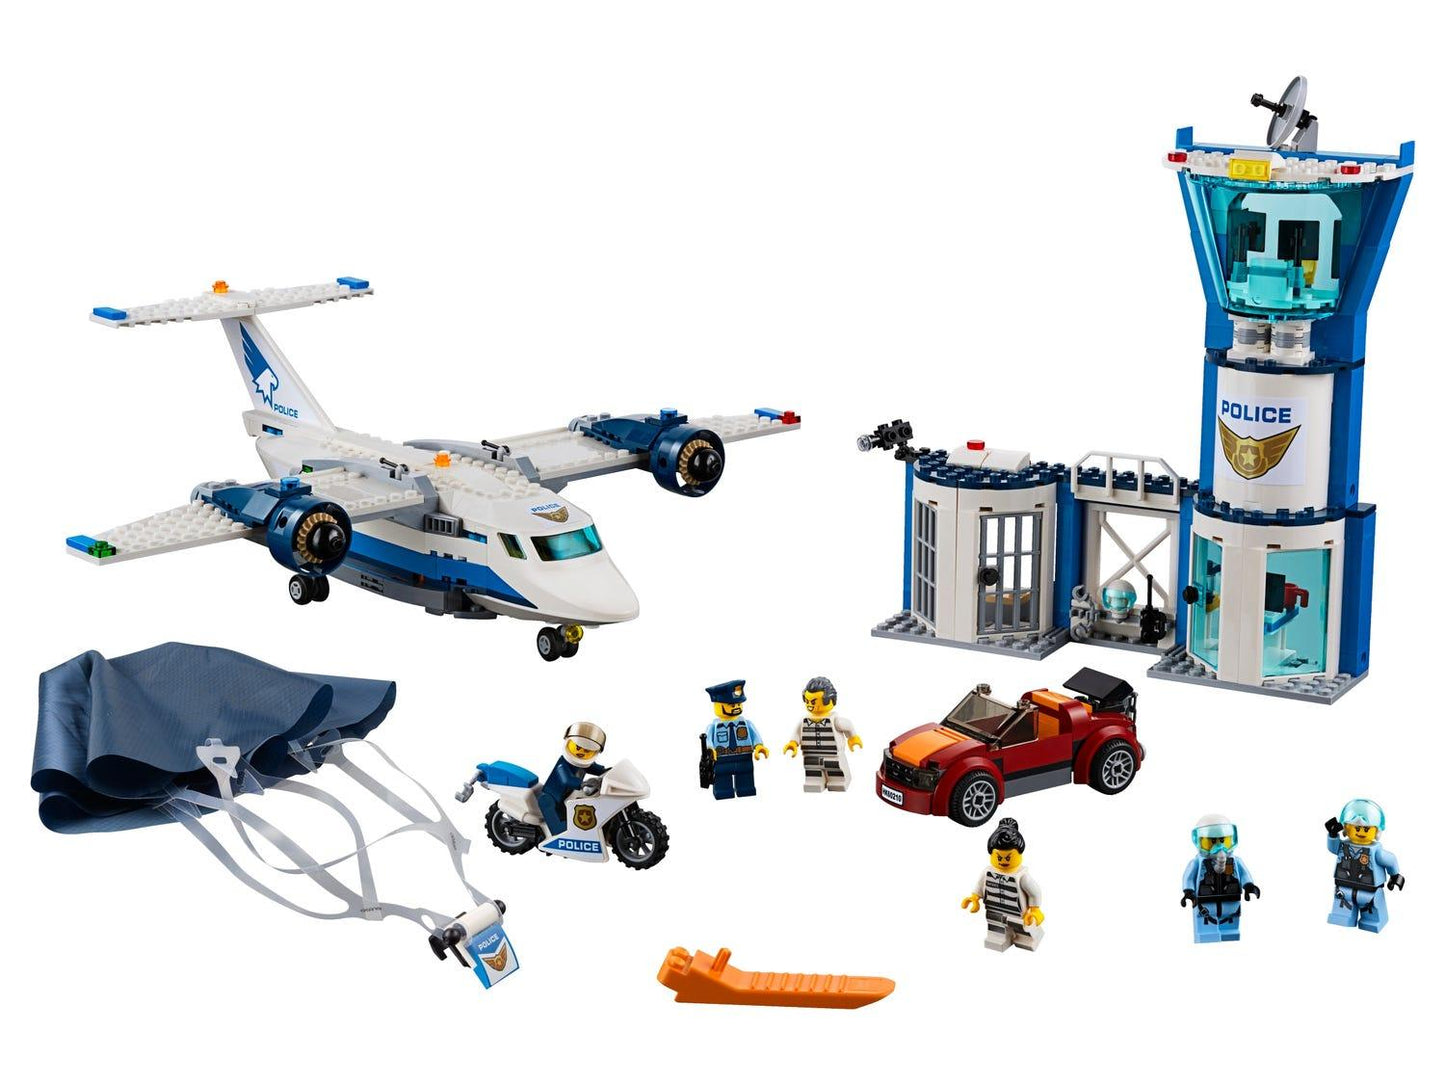 LEGO Lucht politie luchtmachtbasis vliegveld 60210 City LEGO CITY POLITIE @ 2TTOYS LEGO €. 67.49